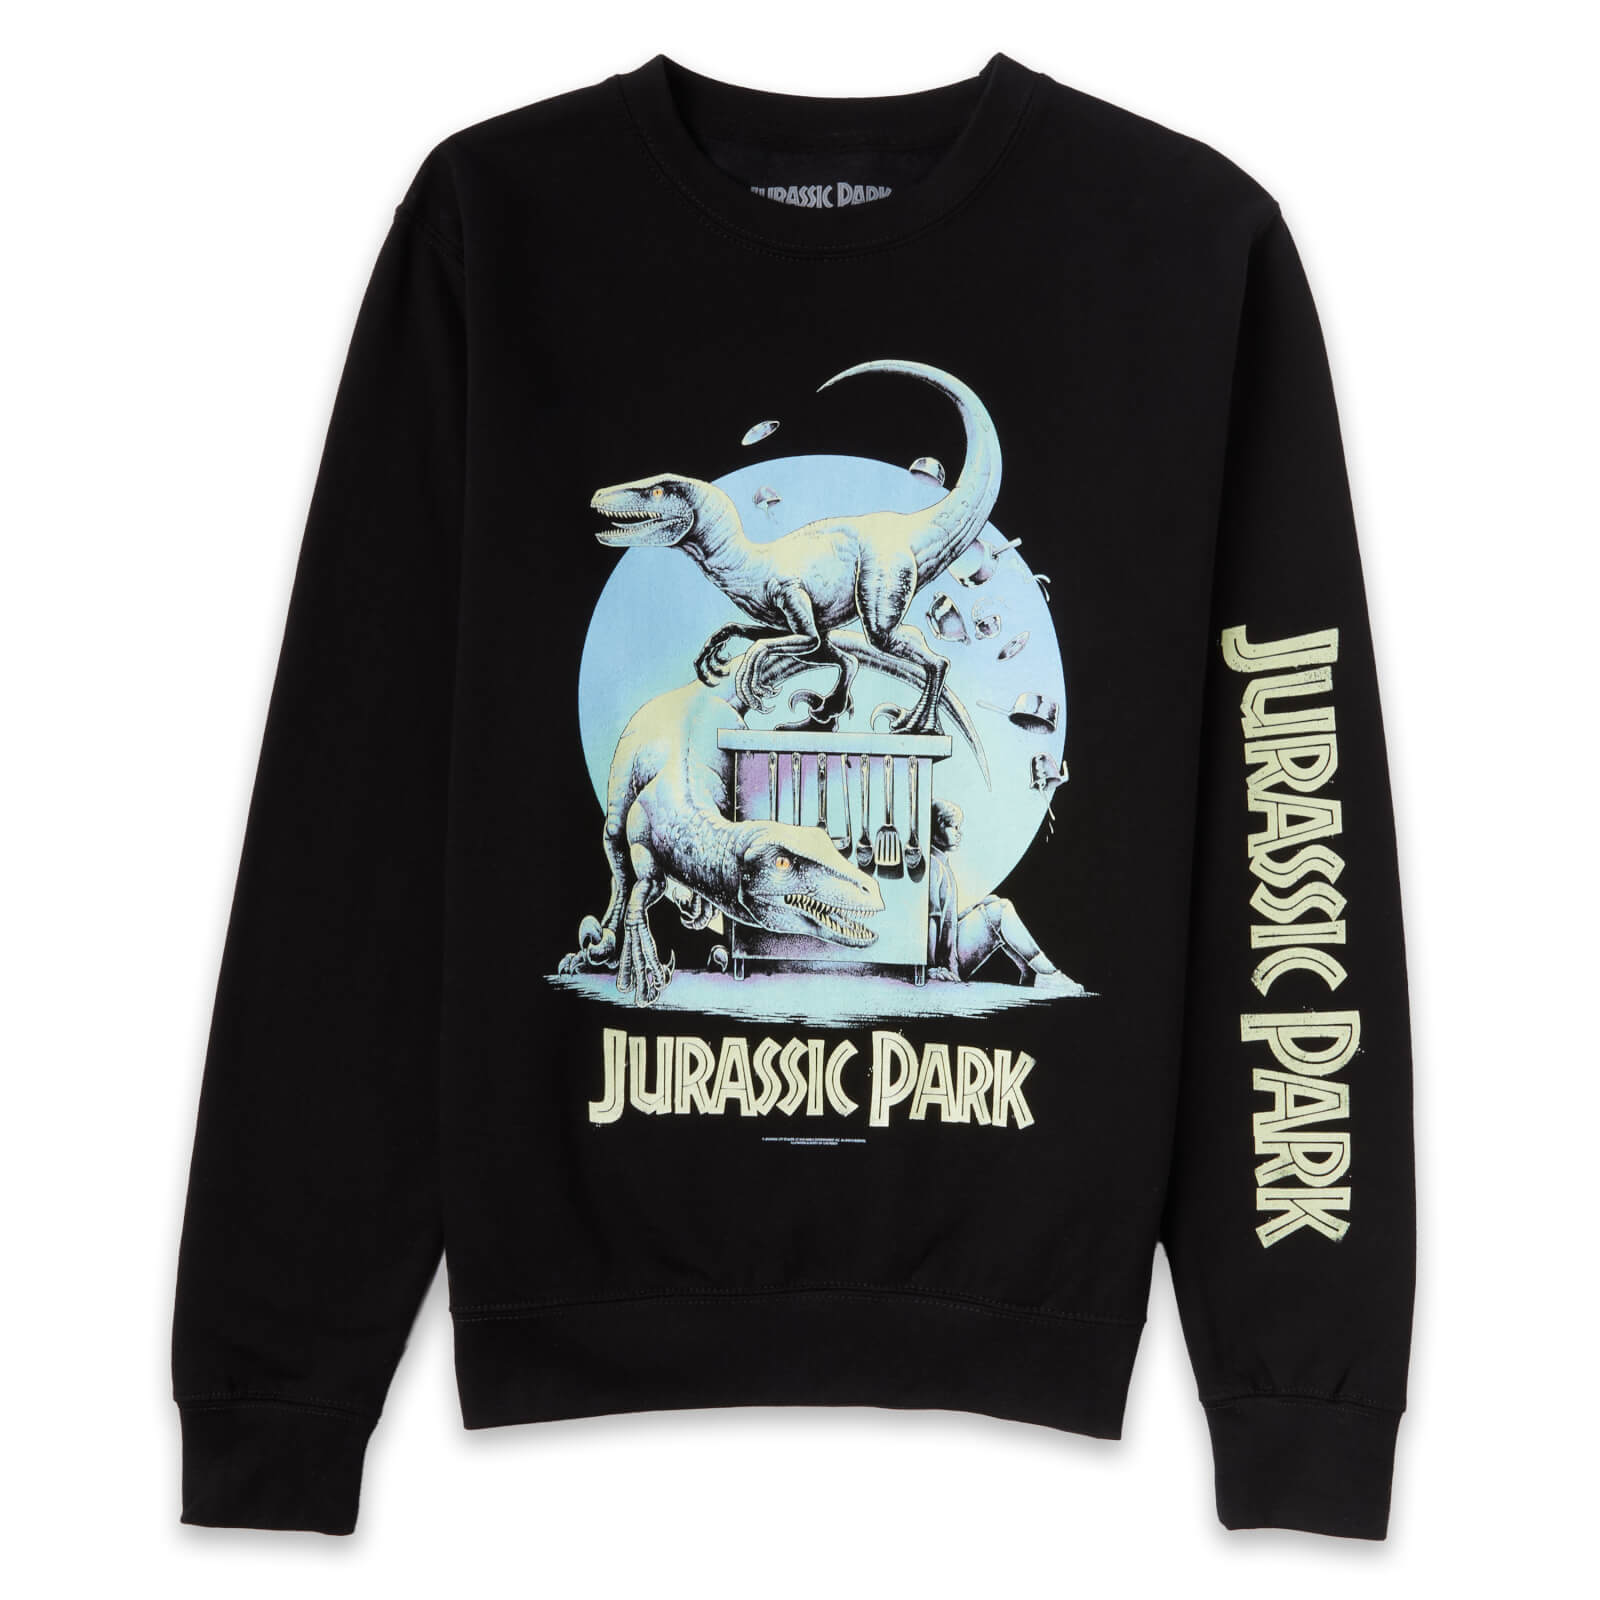 Luke Preece x Jurassic Park An Adventure 65 Million Years In The Making Unisex Sweatshirt - Black - XS